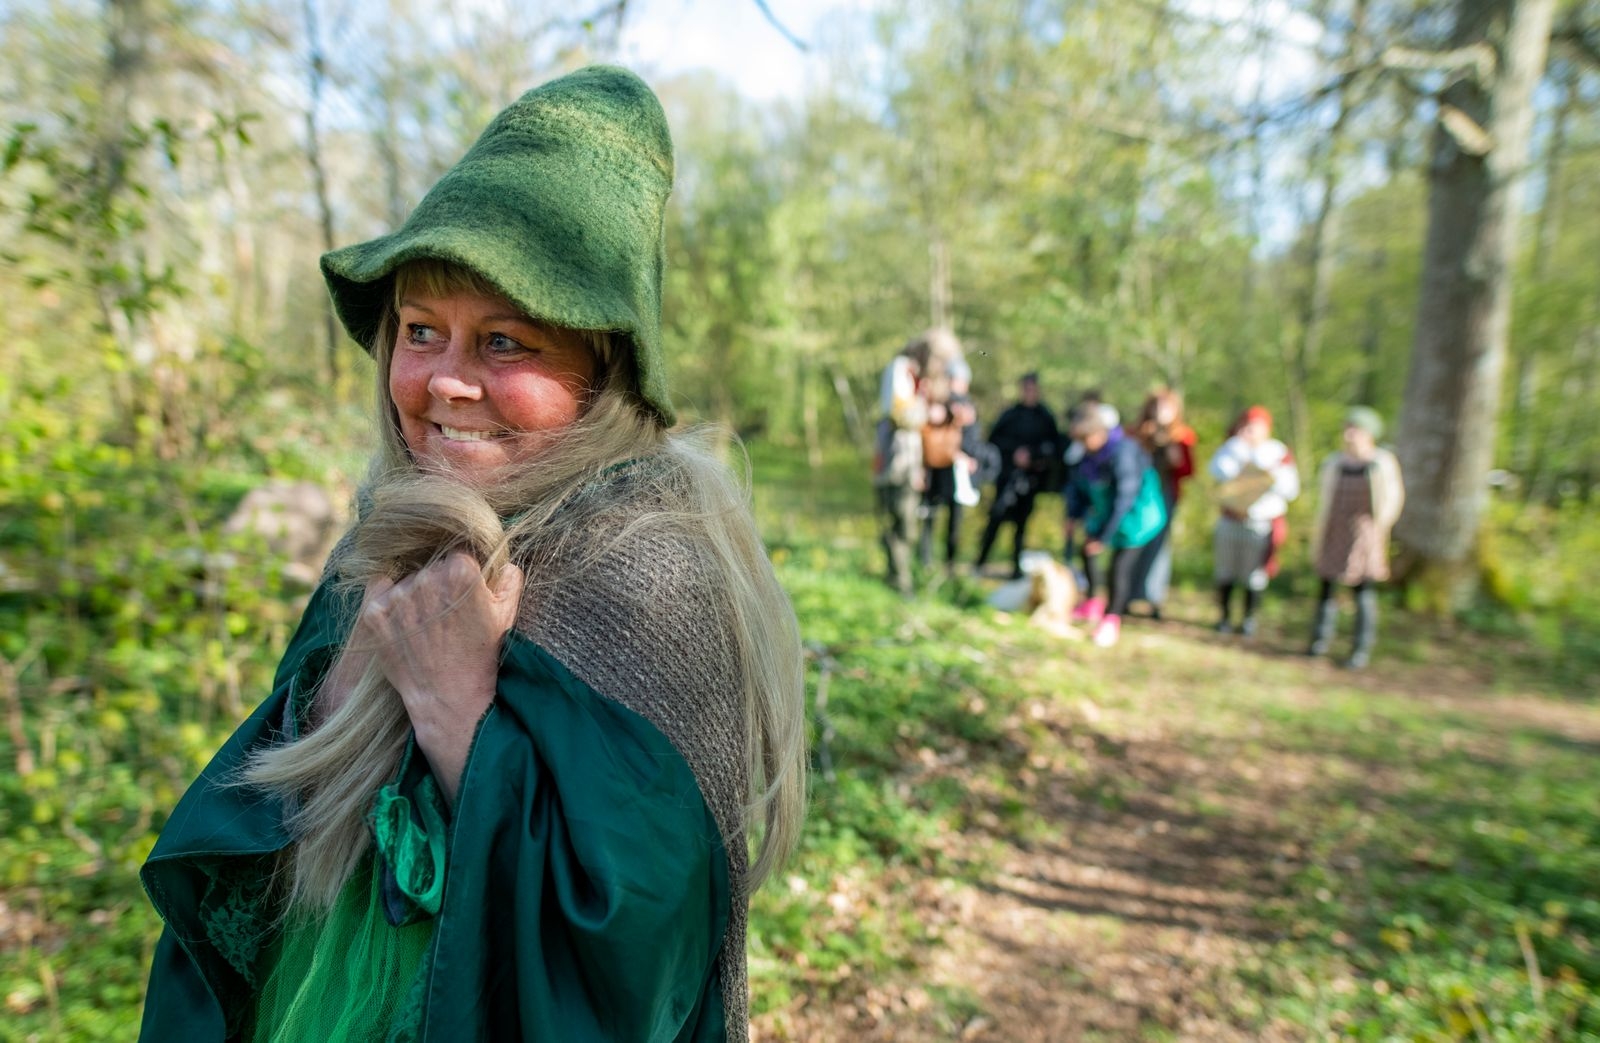 Teatergruppen Teaterinvest ger föreställningen ”En vandring i sagans skog” för barn i naturen kring Krankelösa.